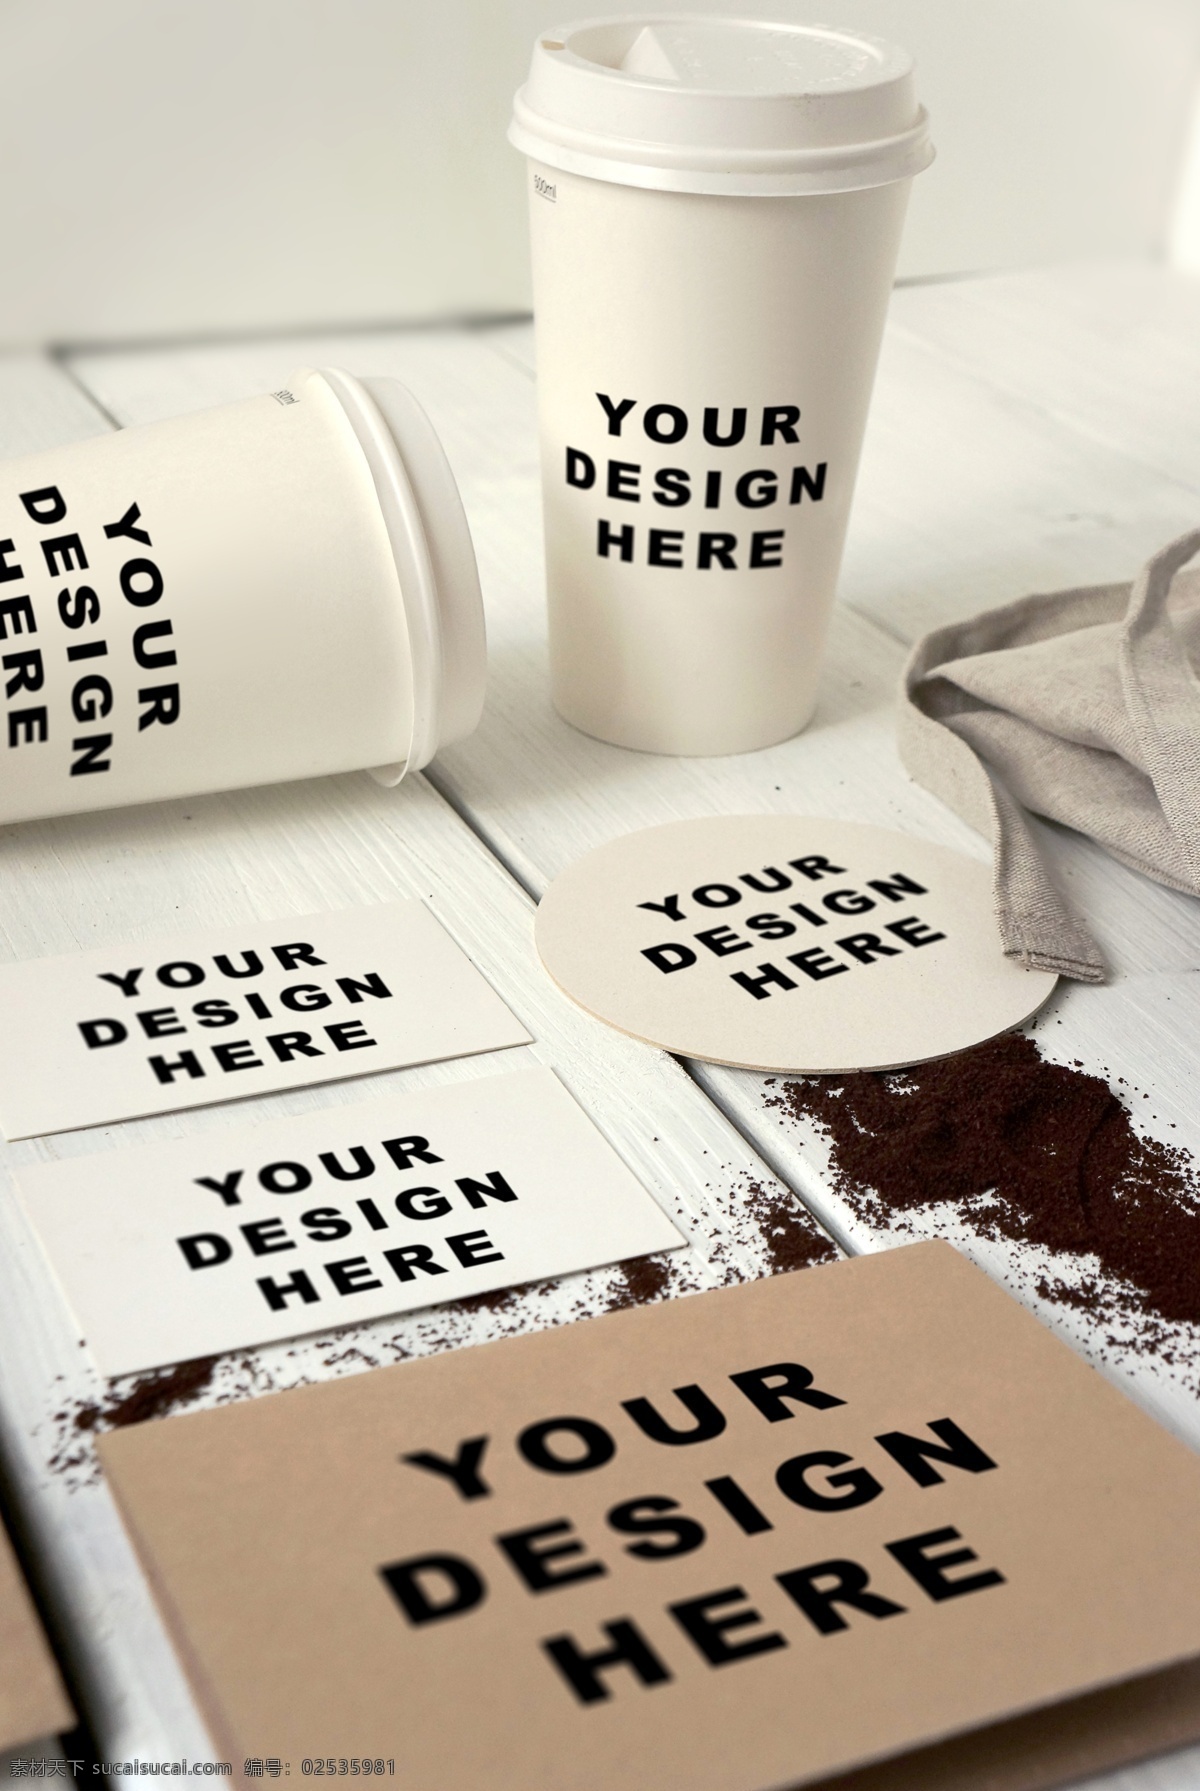 咖啡 品牌 形象 vi 样机 咖啡杯 纸杯 杯子 名片 卡片 样机模板 vi样机 企业 模板 品牌形象 企业形象vi 咖啡品牌